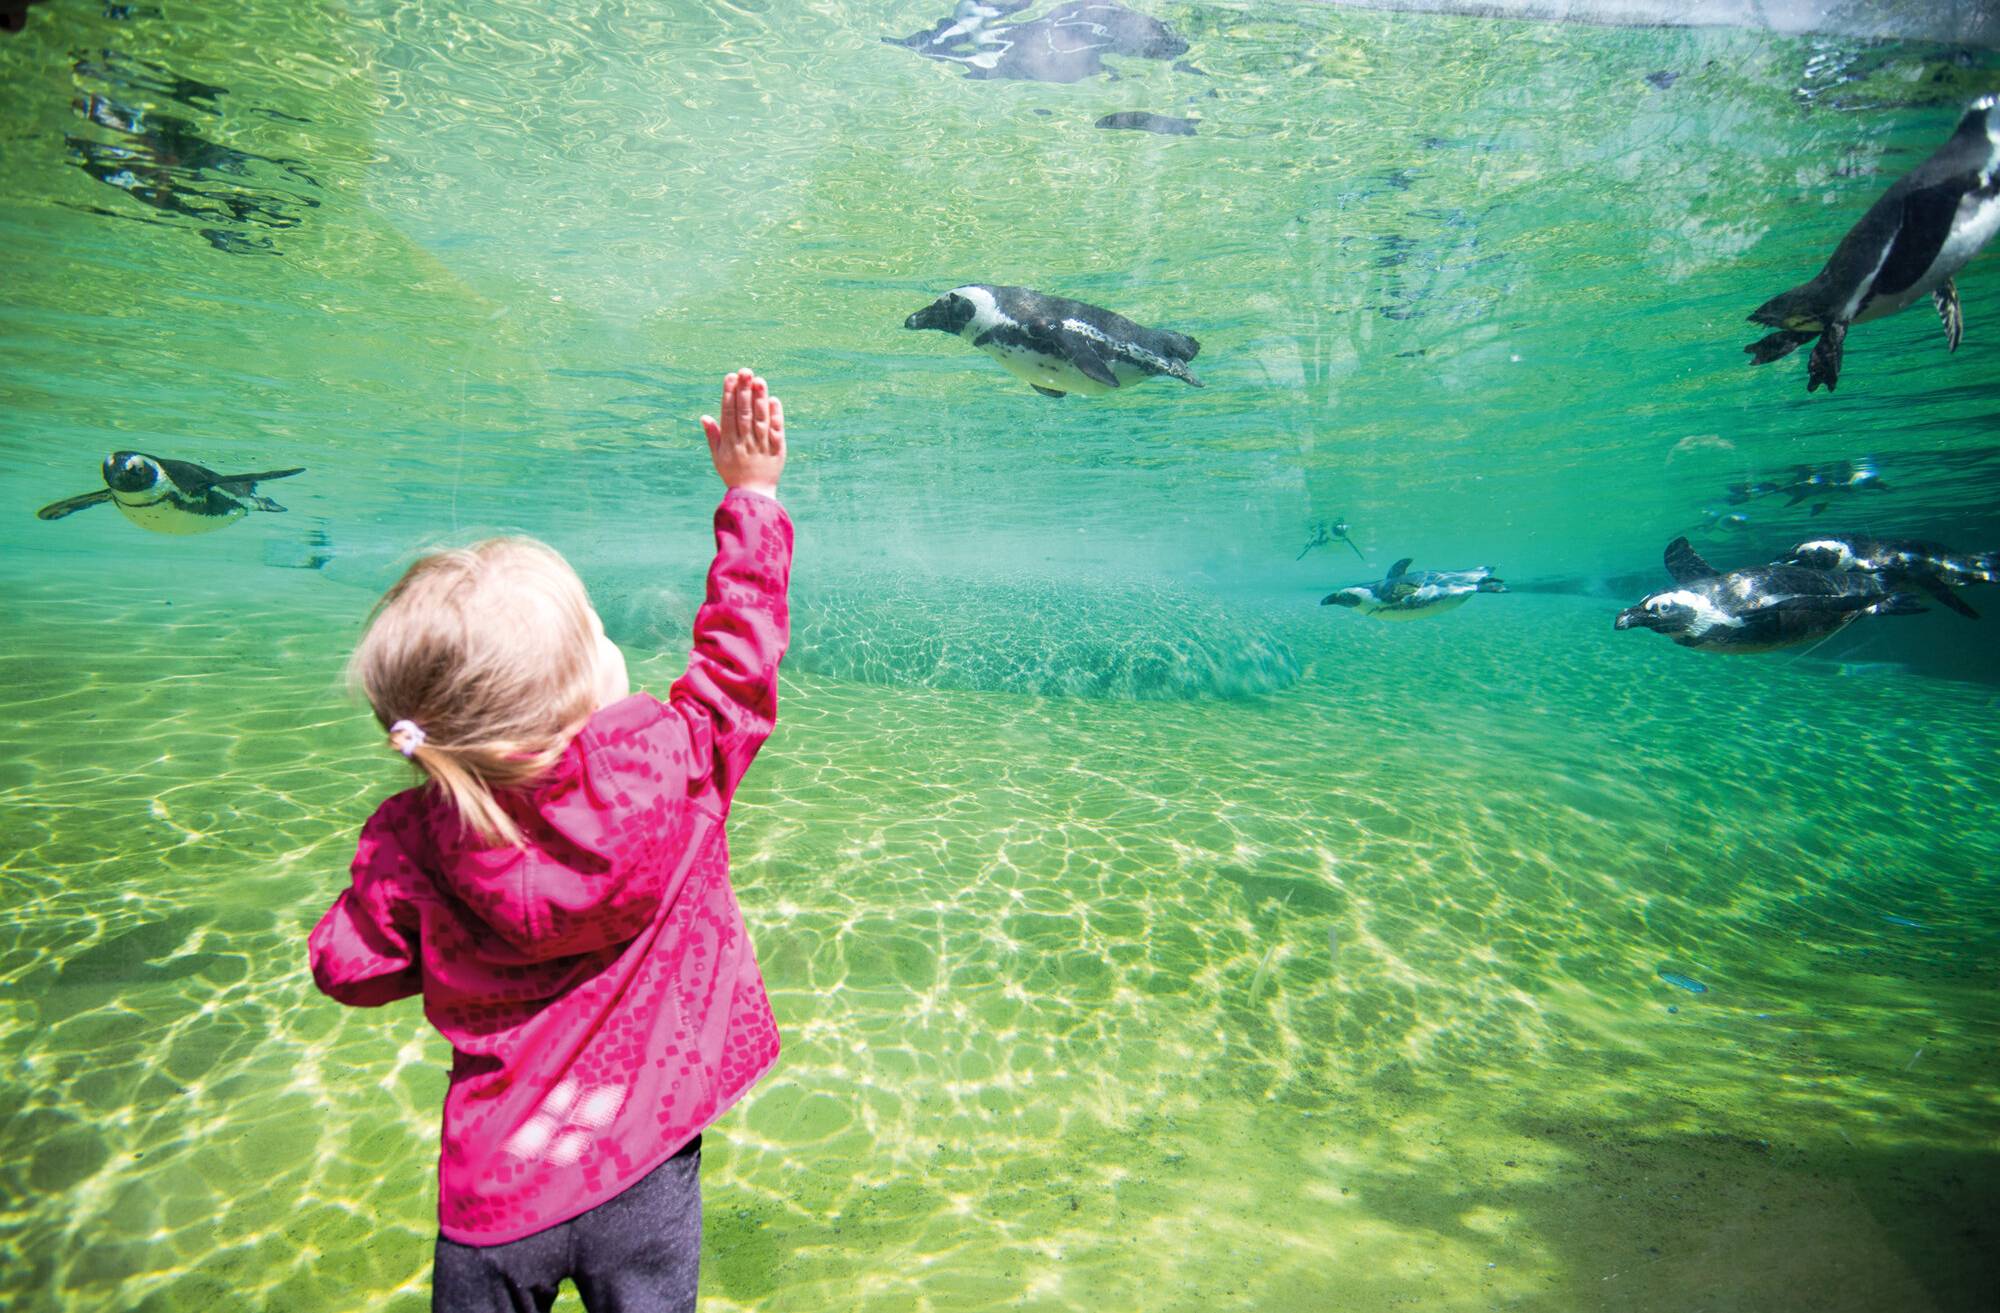 Der Besuch im Zoo ist am 9. September für Sparkassen-Kunden ab 16 Jahren für 5 Euro möglich, begleitende Kinder bis 16 Jahre sind frei.